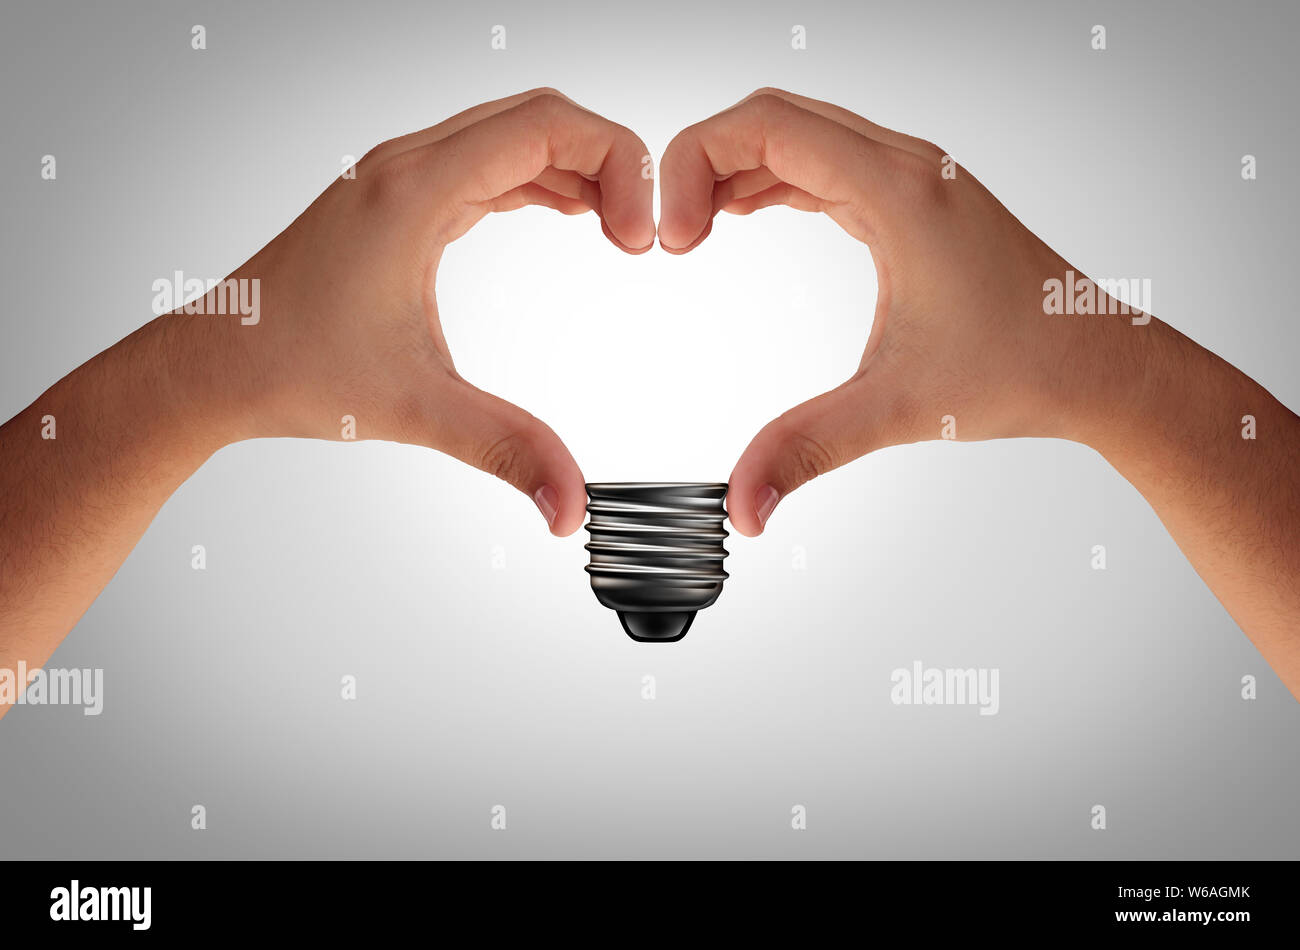 Resumen idea conceptual y el concepto creativo uniendo sus manos en la forma de un corazón eléctrico lámpara de luz inspiradora metáfora o negocio. Foto de stock